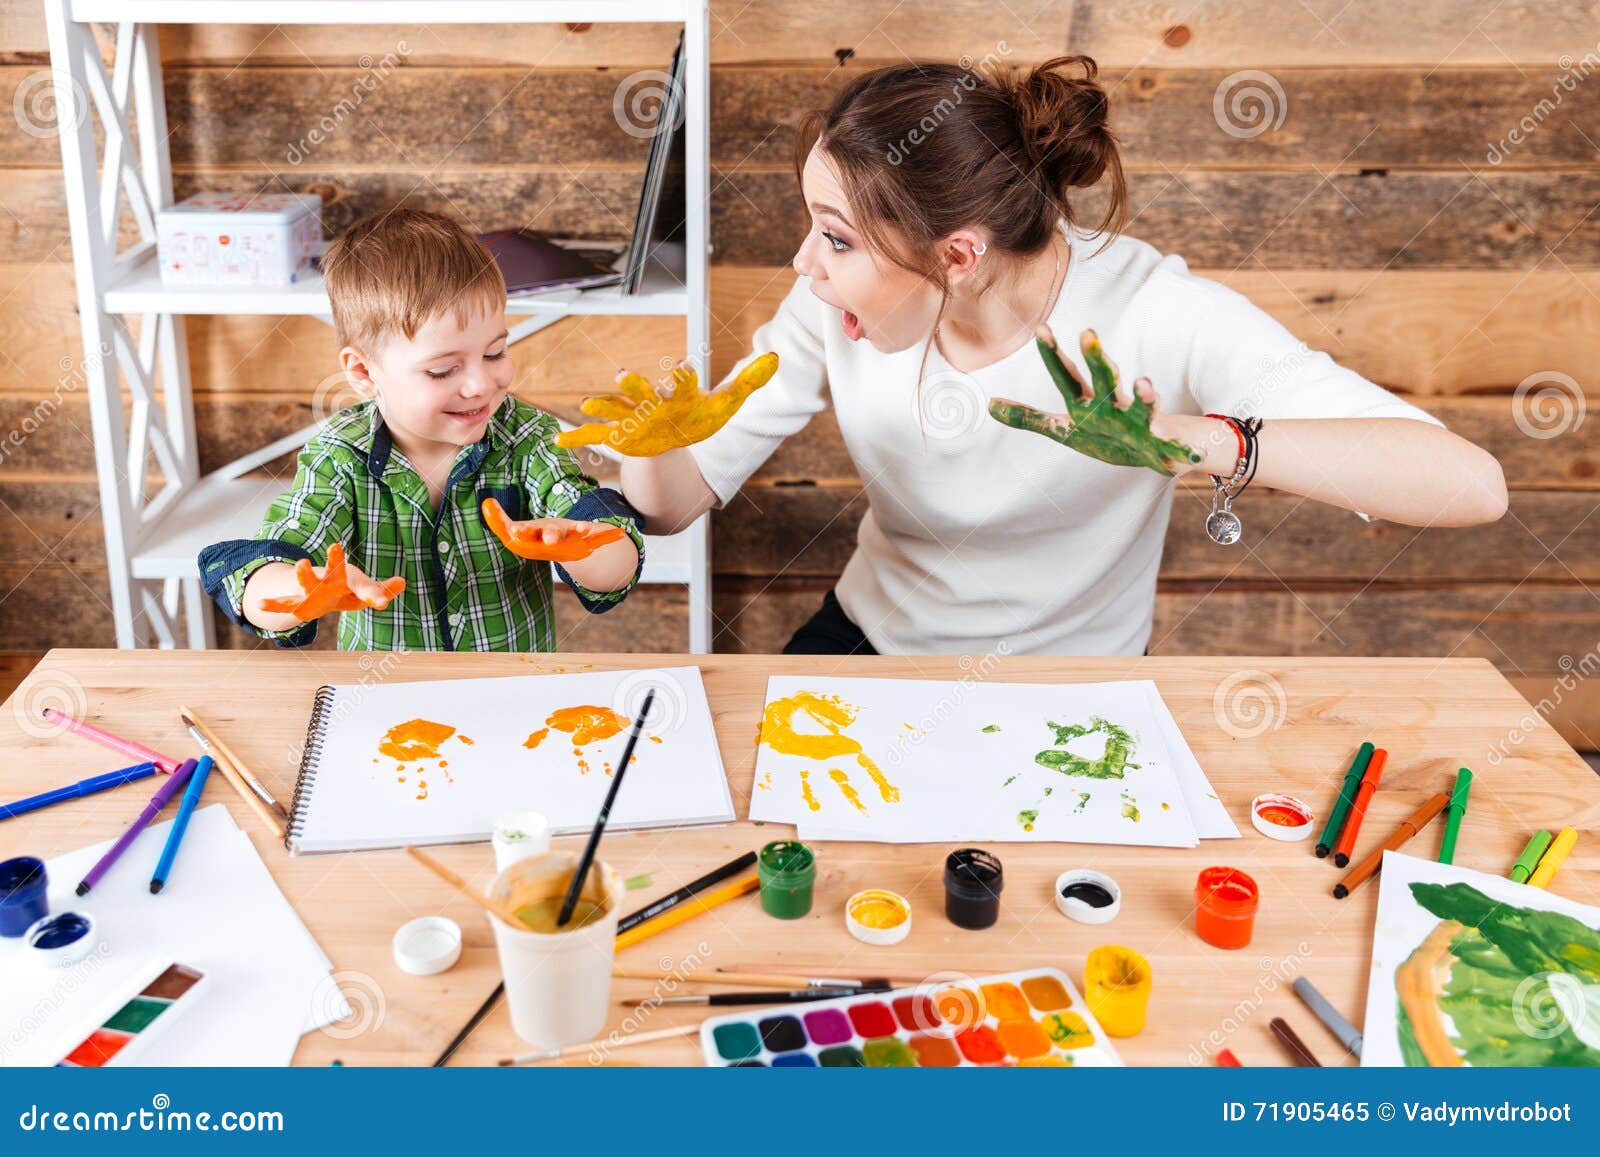 Что можно провести с родителями. Рисование для детей. Занятия творчеством для детей. Занятия рисованием с детьми. Поделки для детей.